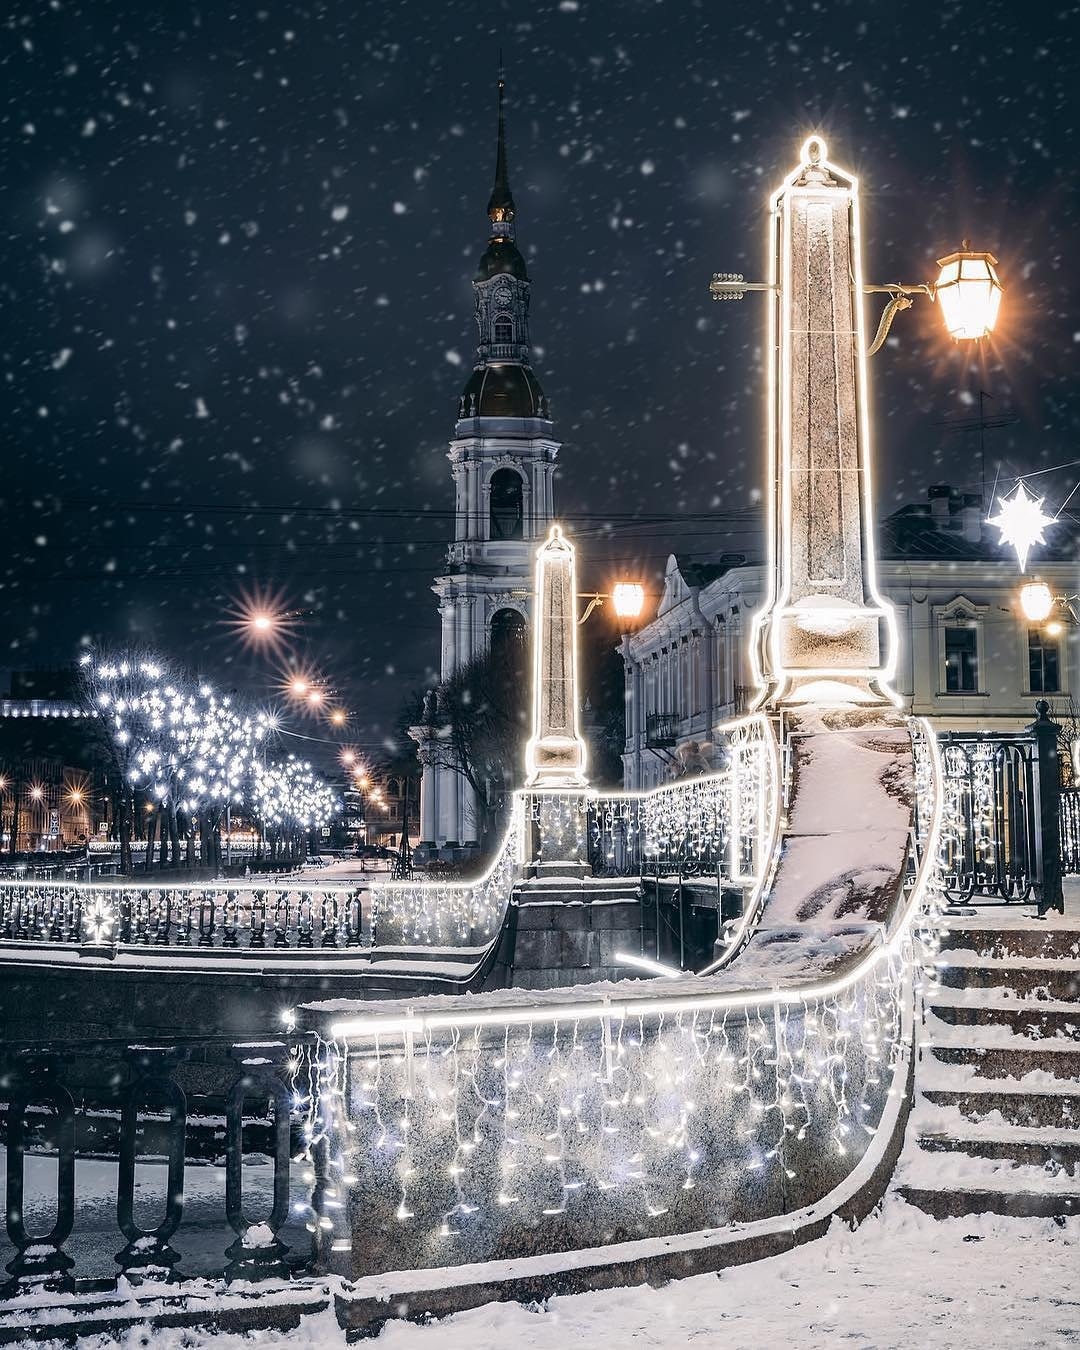 Night lights of St. Petersburg